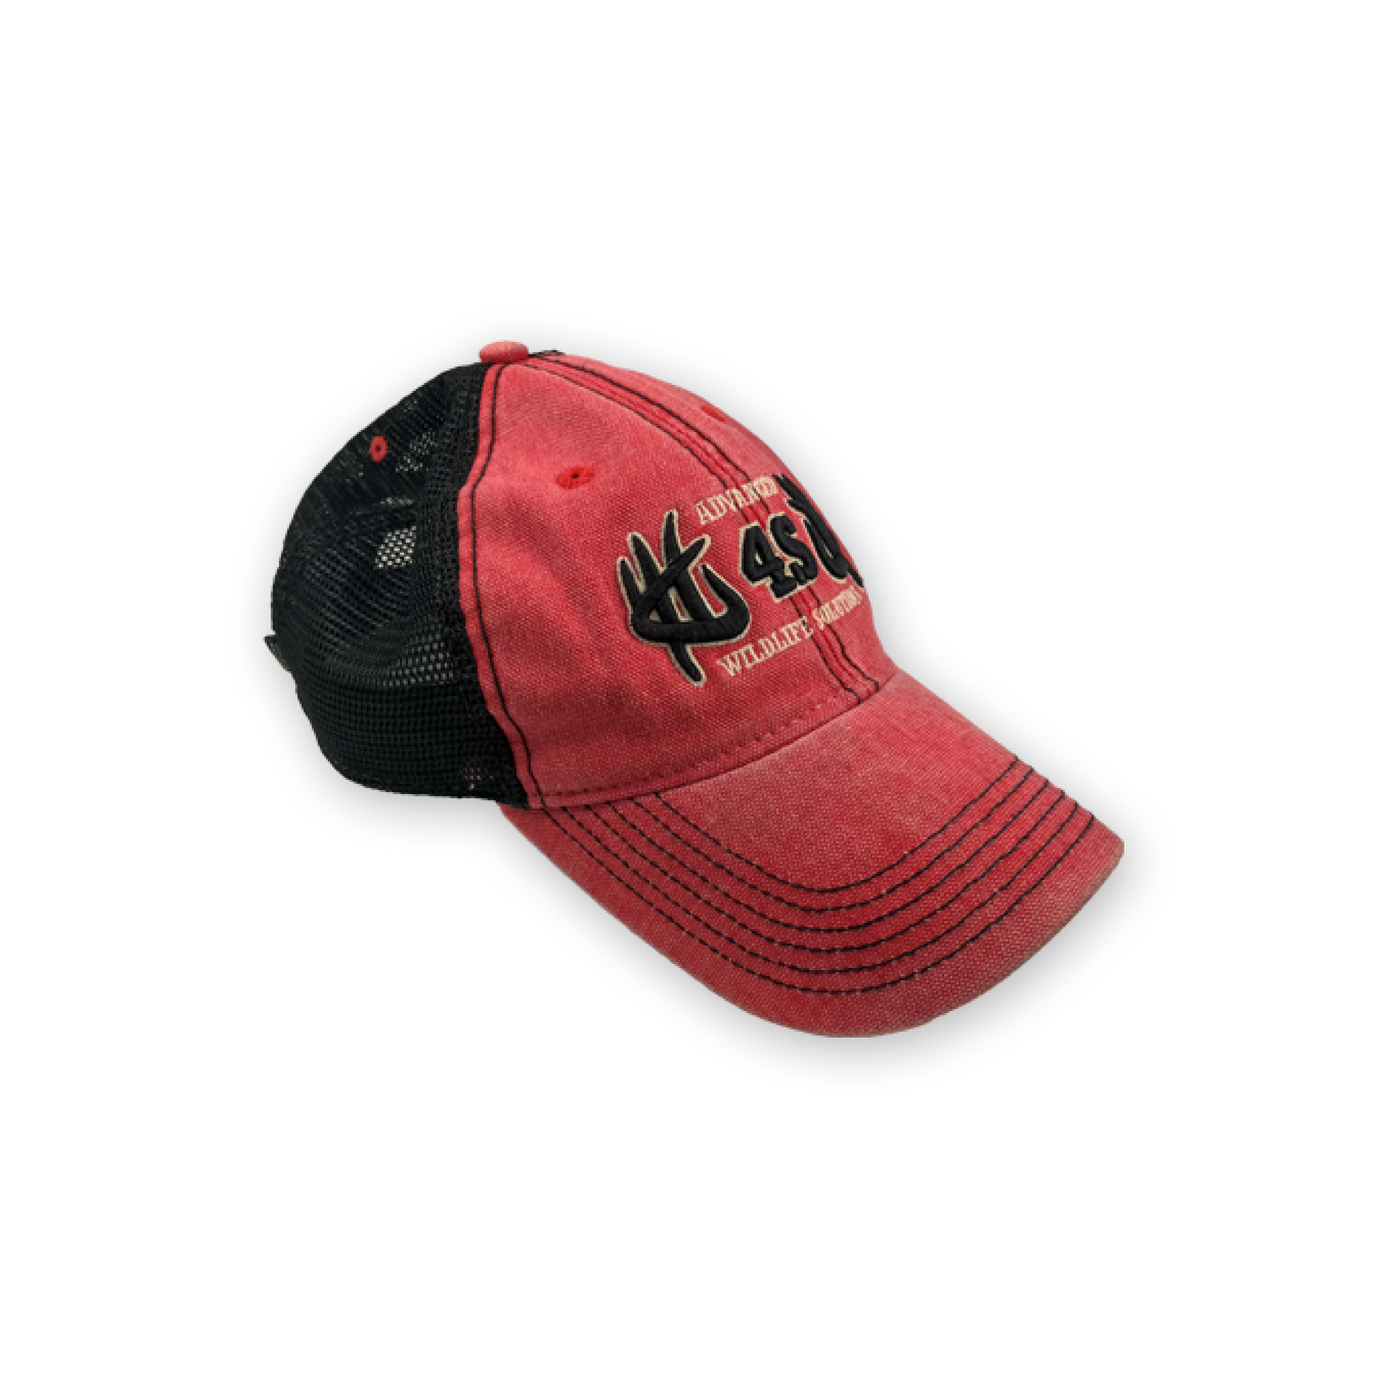 Vintage 4S Hat - Red/Black